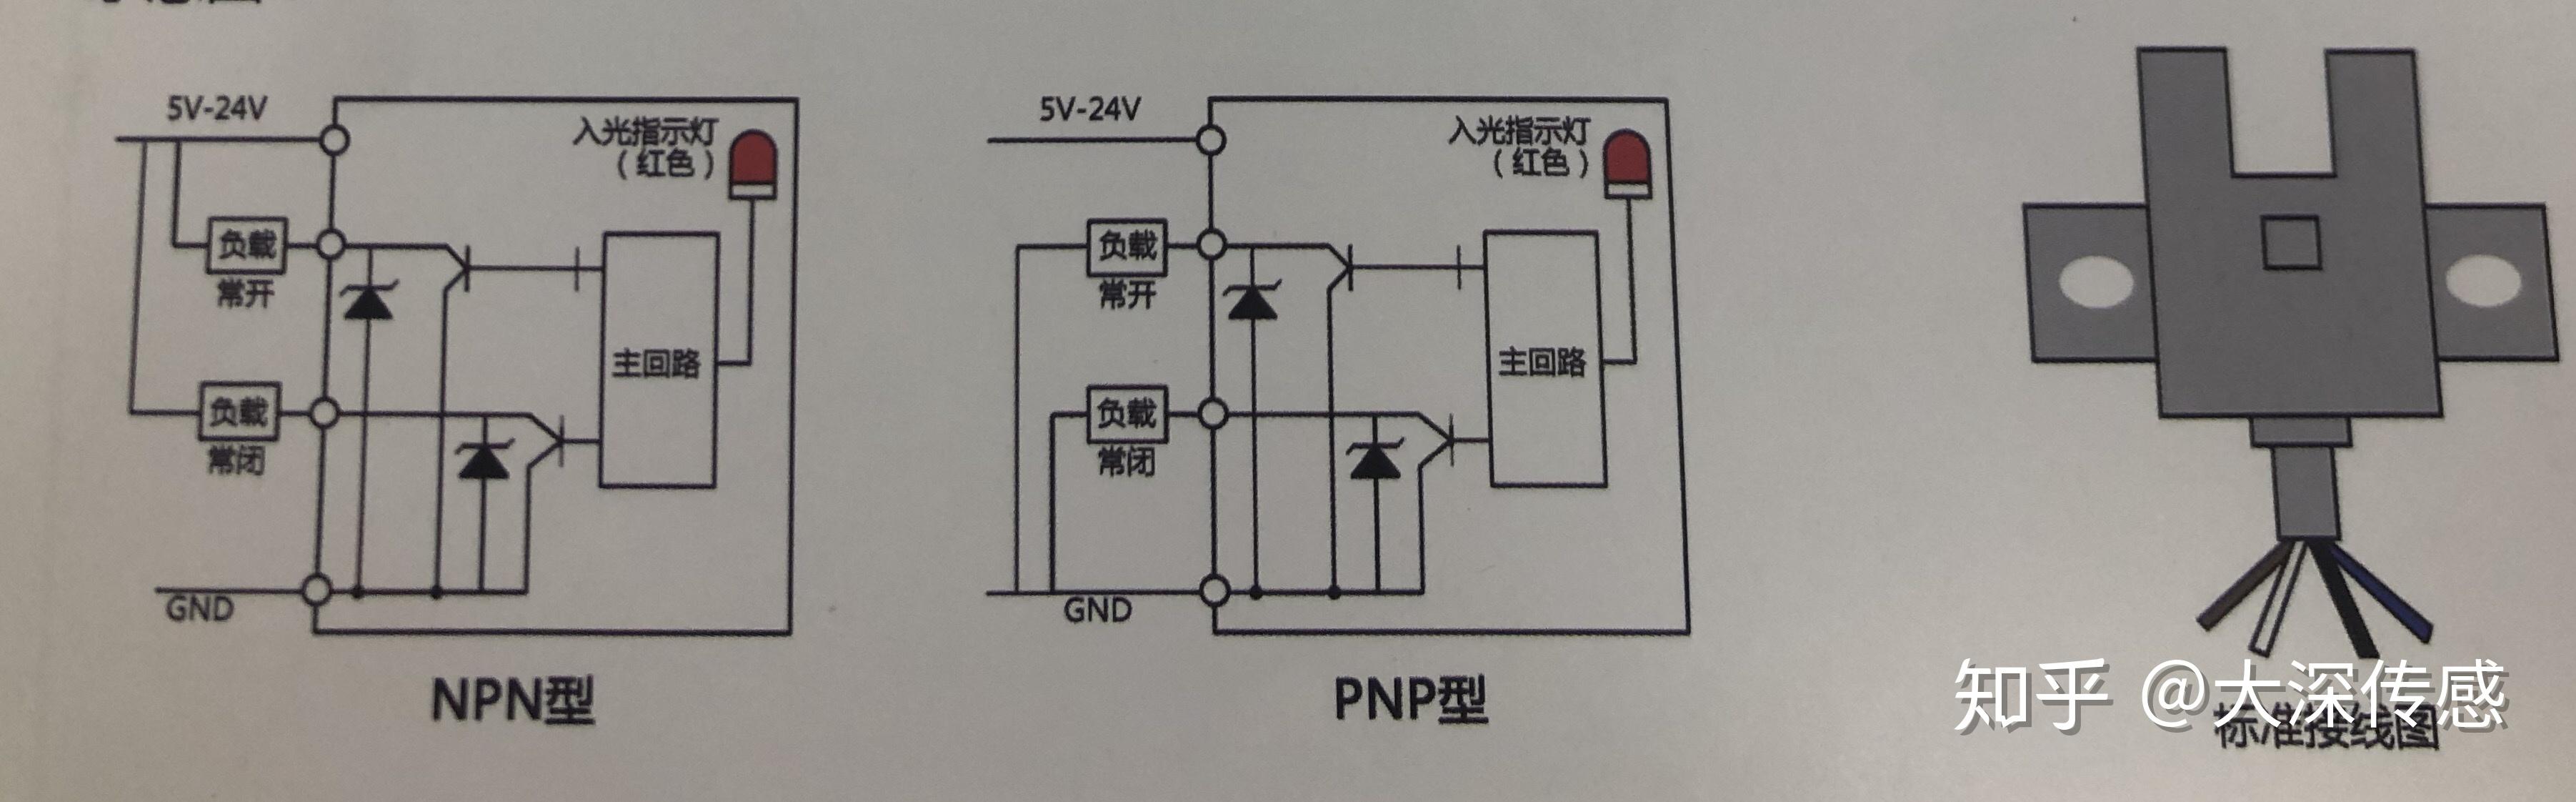 槽型光电传感器电路图图片